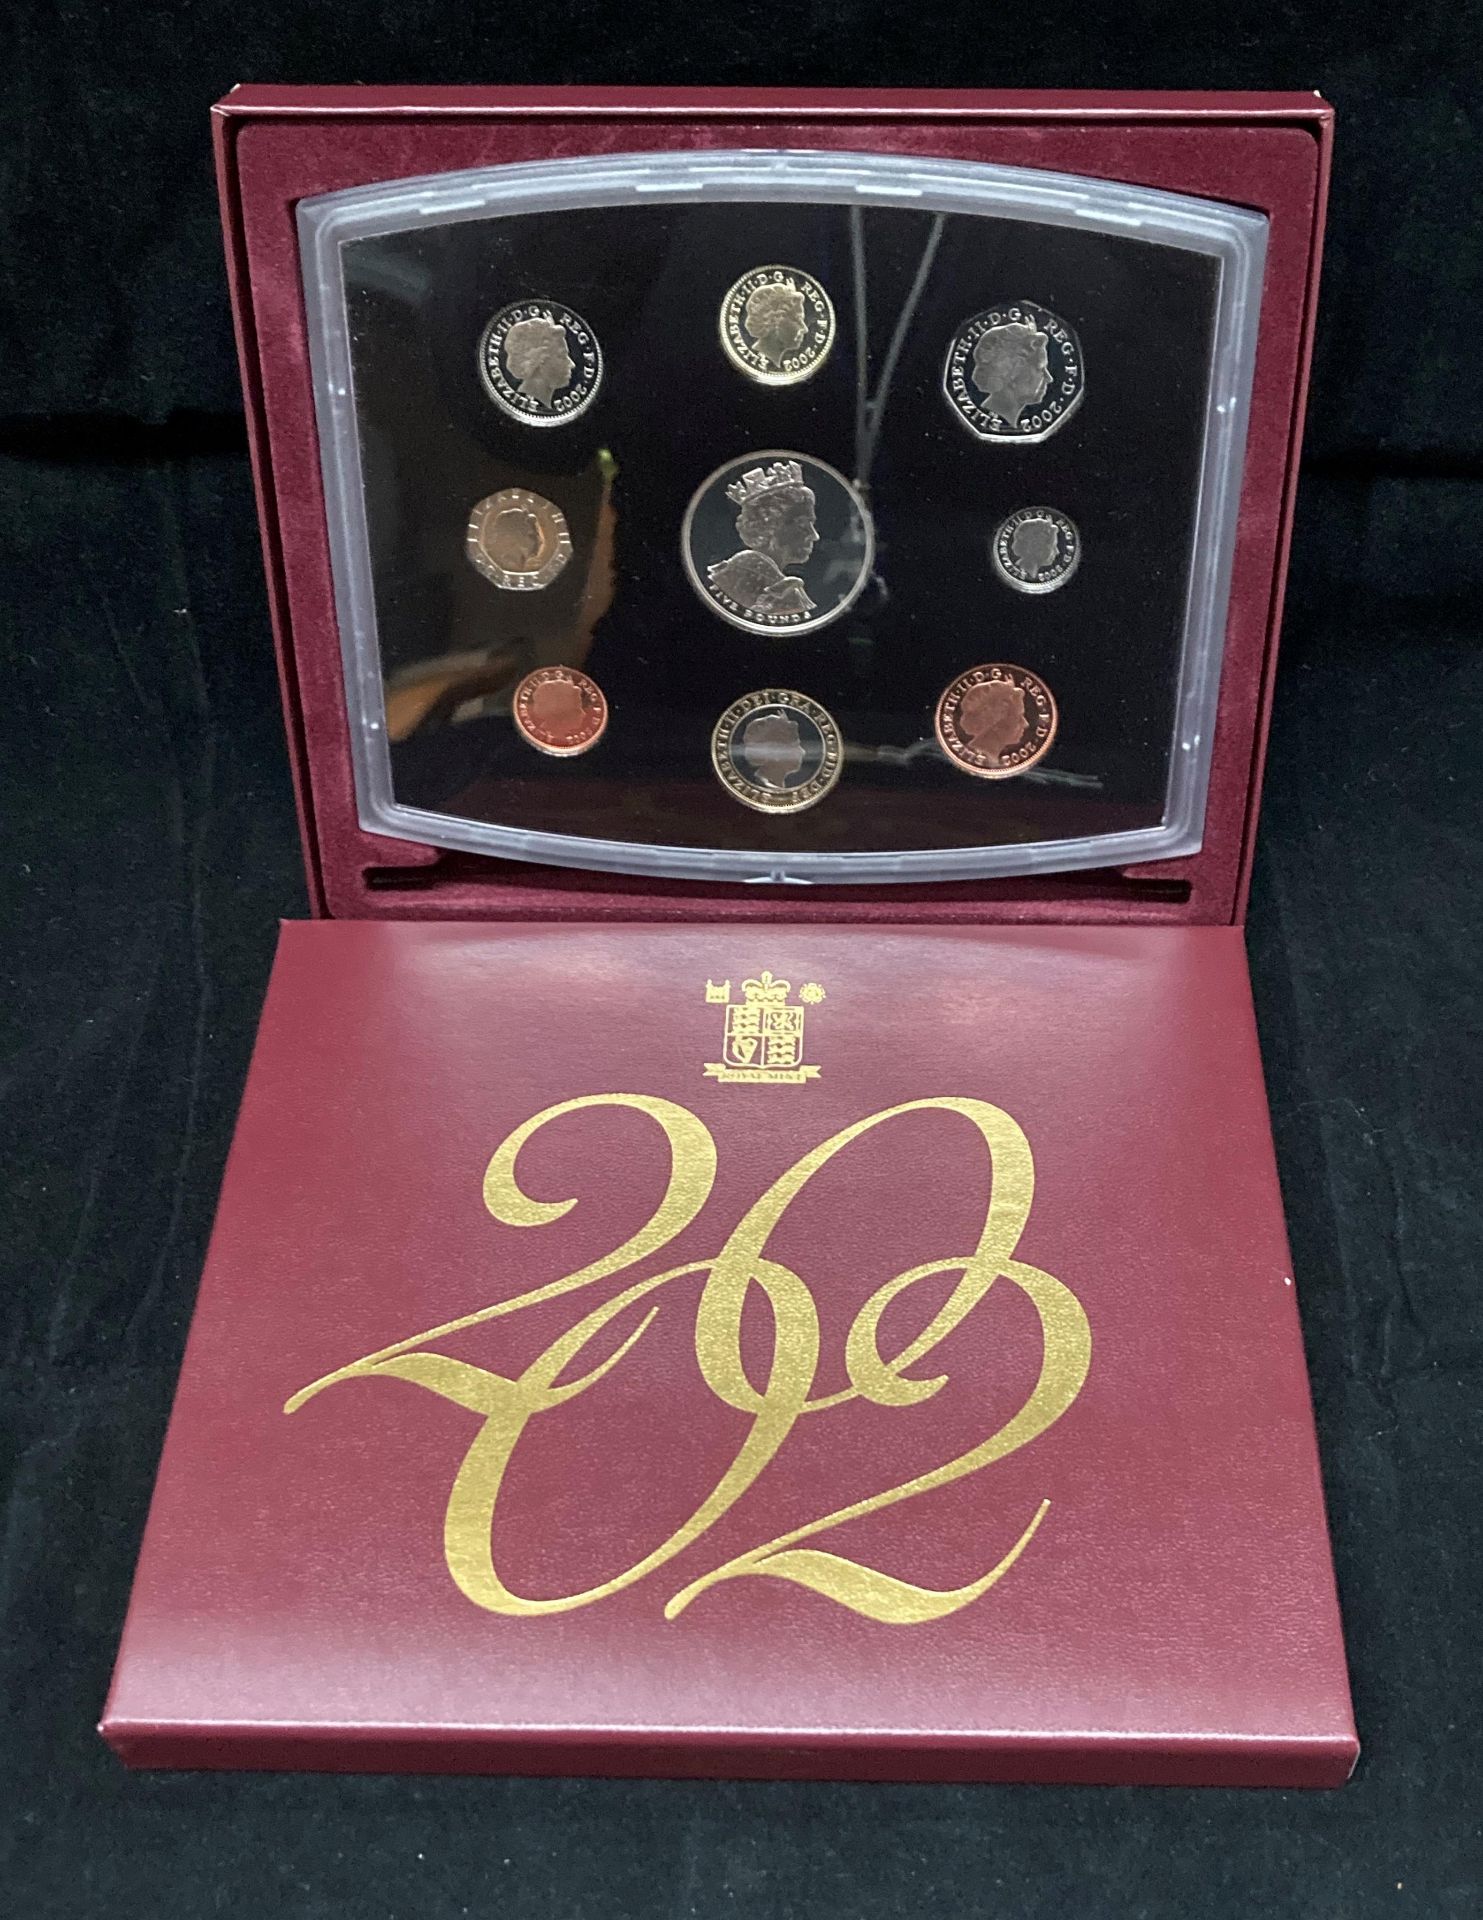 A Royal Mint United Kingdom boxed proof set 2002